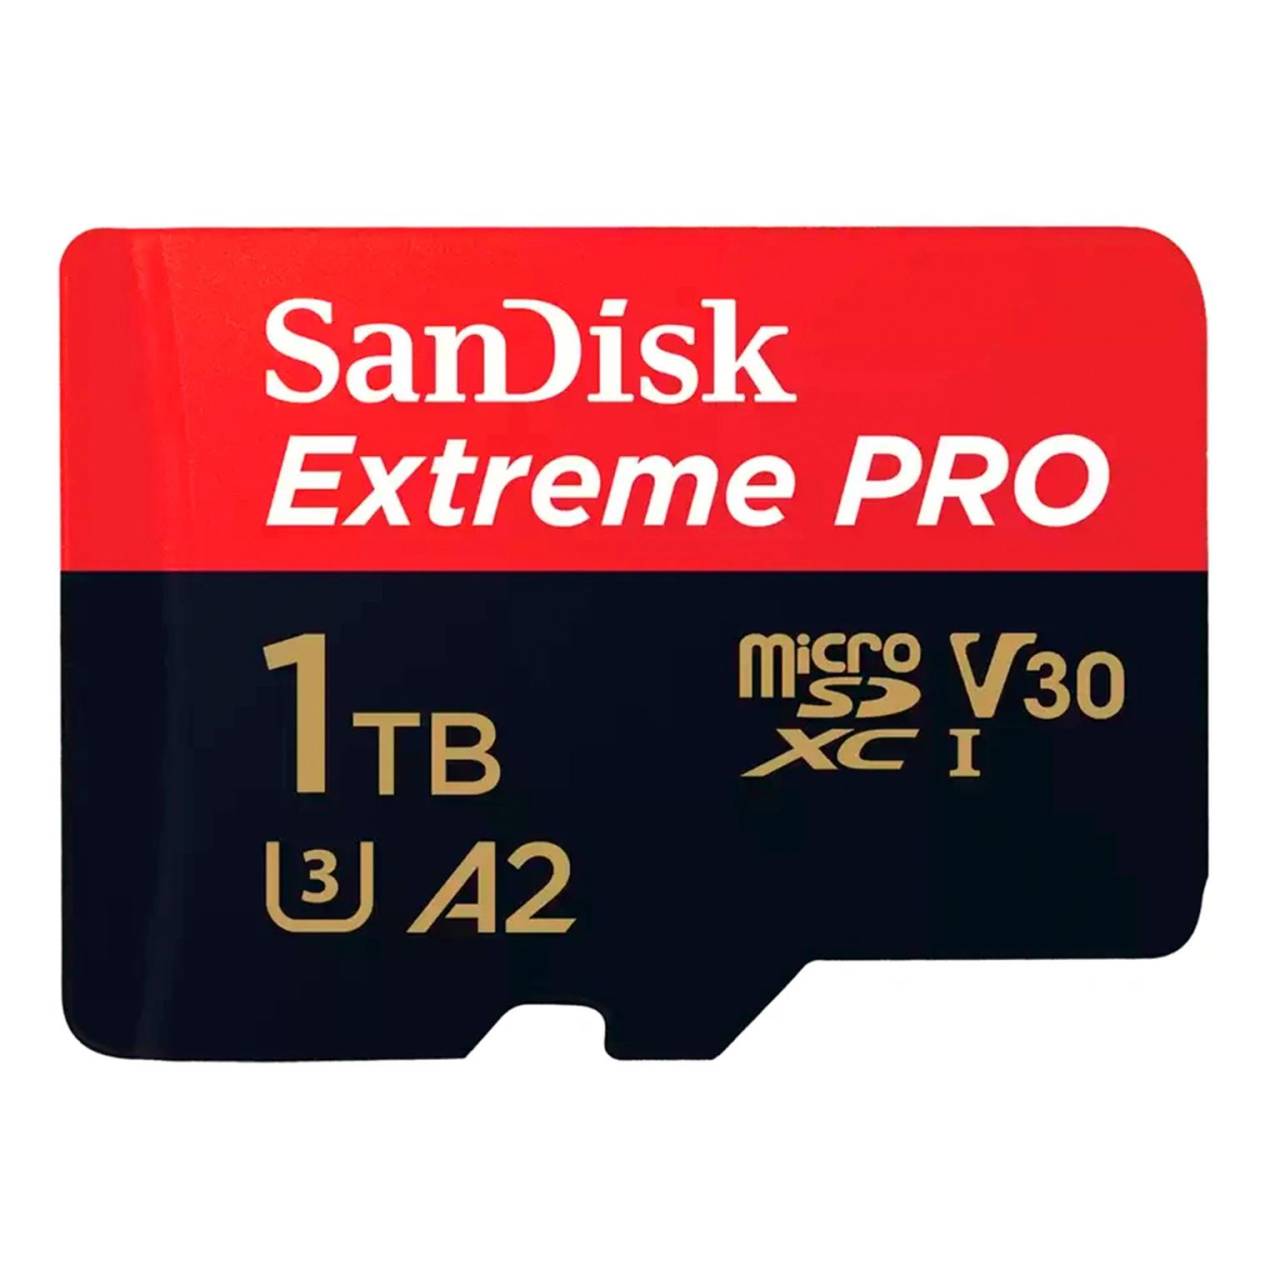 SanDisk microSDXC Karte – mit SD Slot Adapter für Smartphones und andere Geräte, Extreme PRO Serie, 1 TB